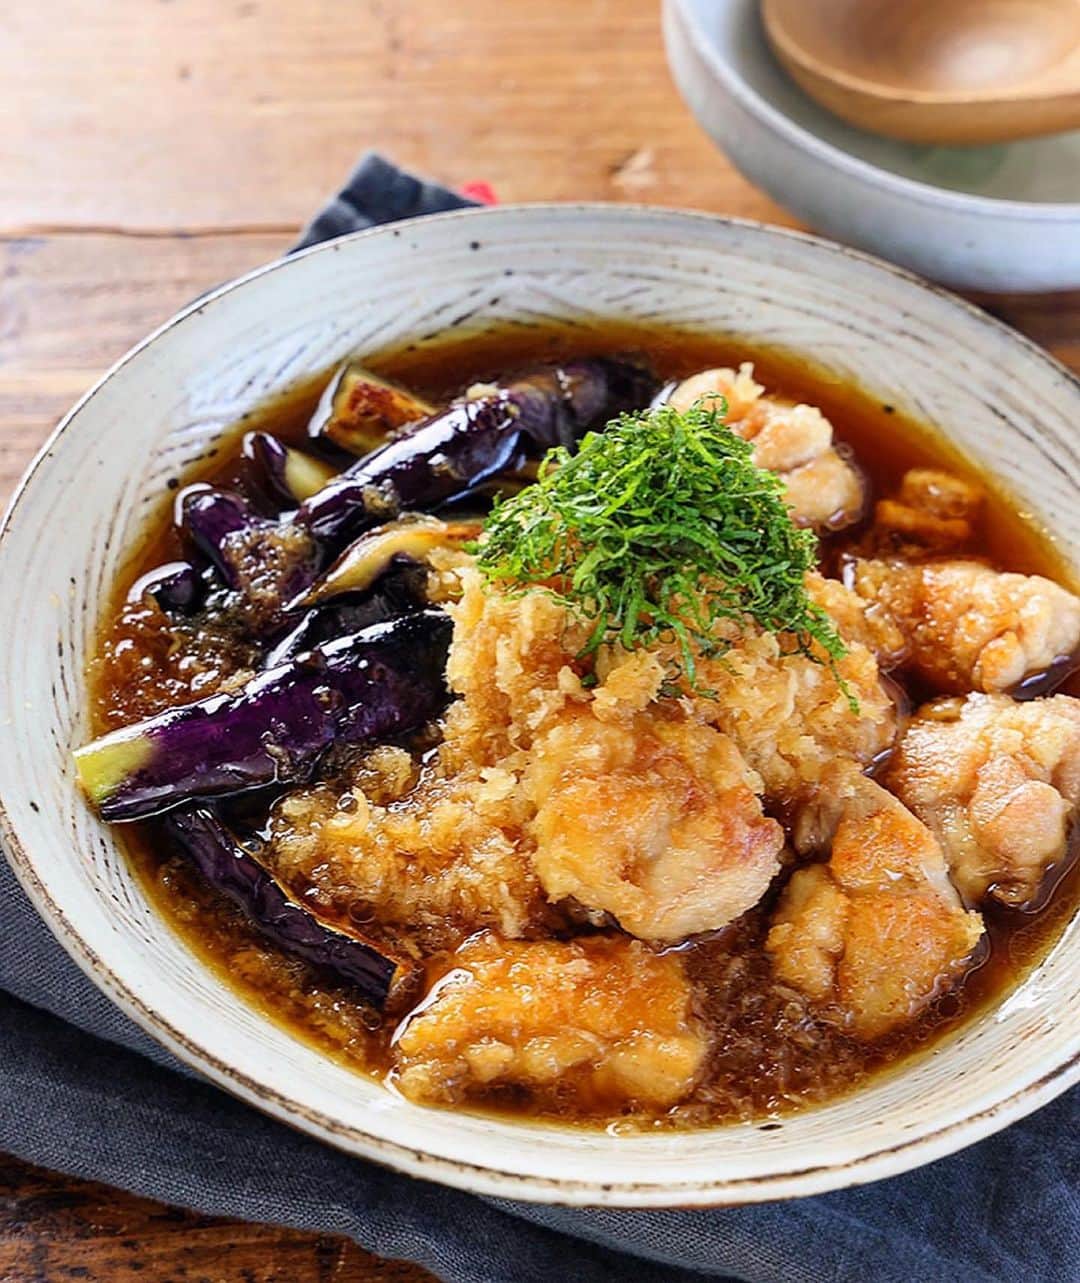 Mizuki【料理ブロガー・簡単レシピ】さんのインスタグラム写真 - (Mizuki【料理ブロガー・簡単レシピ】Instagram)「・カリッじゅわ〜食感💕 ⁡ ［#レシピ ］ ーーーーーーーーーーーーーーーー 揚げない！鶏肉となすの揚げ出し ーーーーーーーーーーーーーーーー ⁡ ⁡ ⁡ おはようございます☺️ ⁡ 💬インスタの新しいアプリ 『#Threads 』はじめました🌸 あちらではレシピ未満の料理とか 変な暮らしを綴りますので 仲良くしてくださいね✨ ラフな感じで繋がりましょう🥰 ⁡(ストーリー、ハイライトから💨) ⁡ ⁡  さて、レシピです📝 今日ご紹介させていただくのは \ 揚げない！鶏肉となすの揚げ出し / (再掲載) ⁡ 以前ご紹介した #揚げ出し鶏m に 野菜を加えてアレンジしました💕 ⁡ 作り方は超簡単！！ 鶏肉となすを一緒に焼いて おろし入りのお出汁をかけるだけ✨ カリッじゅわ〜な食感と ふわっと香るごま油が たまらない味わいですよ〜😋 ⁡ フライパンひとつでできるので よかったらお試し下さいね♩ ⁡ ⁡ ⁡ ⋱⋰ ⋱⋰ ⋱⋰ ⋱⋰ ⋱⋰ ⋱⋰ ⋱⋰ ☑︎簡単・時短・節約レシピ更新中 @mizuki_31cafe ⁡ ☑︎謎の暮らし＆変なライブ垢 @mizuki_kurashi ⋱⋰ ⋱⋰ ⋱⋰ ⋱⋰ ⋱⋰ ⋱⋰ ⋱⋰ ⁡ ⁡ ⁡ ＿＿＿＿＿＿＿＿＿＿＿＿＿＿＿＿＿＿＿ 【2人分】 鶏もも肉...1枚(250g) 塩こしょう...少々 片栗粉...大1 なす...2本(200g) 大根...150g ごま油...大2 ●水...200ml ●醤油・みりん...各大2 ●和風顆粒だし...小1/3 大葉(千切り)...適量 ⁡ 1.大根はすり下ろして軽く水気を切る。鶏肉は3cm大に切り、塩こしょうを振って片栗粉をまぶす。なすは長さを半分にし、縦6等分に切り、水に5分晒して水気を拭く。 2.フライパンにごま油を中火で熱し、鶏肉となすを両面焼き、火が通ったら器に盛る。 3.そのままのフライパンに●を入れて煮立てる。大根おろしを加えて火を止め、2にかけ、大葉をのせる。 ￣￣￣￣￣￣￣￣￣￣￣￣￣￣￣￣￣￣￣ ⁡ ⁡ 《ポイント》 ♦︎なすはしっかり水気を切り(できれば拭いて)、皮目から焼くと色鮮やかに仕上がります♩ ♦︎直径26cm以上のフライパンを使用するのがおすすめです♩ ♦︎お出汁はたっぷりです♩ ⁡ ⁡ ⁡ ⁡ ⁡ ⁡ ⋱⋰ ⋱⋰ ⋱⋰ ⋱⋰ ⋱⋰ ⋱⋰ ⋱⋰  愛用している調理器具・器など   #楽天ROOMに載せてます ‎𐩢𐩺  (ハイライトから飛べます🕊️) ⋱⋰ ⋱⋰ ⋱⋰ ⋱⋰ ⋱⋰ ⋱⋰ ⋱⋰ ⁡ ⁡ ⁡ ⁡ ⁡ ⁡ ✼••┈┈┈┈┈••✼••┈┈┈┈┈••✼ 今日のごはんこれに決まり！ ‎𓊆#Mizukiのレシピノート 500品𓊇 ✼••┈┈┈┈┈••✼••┈┈┈┈┈••✼ ⁡ ˗ˏˋ おかげさまで25万部突破 ˎˊ˗ 料理レシピ本大賞準大賞を受賞しました✨ ⁡ 6000点の中からレシピを厳選し まさかの【500レシピ掲載】 肉や魚のメインおかずはもちろん 副菜、丼、麺、スープ、お菓子 ハレの日のレシピ、鍋のレシピまで 全てこの一冊で完結 𓌉◯𓇋 (全国の書店・ネット書店で発売中) ⁡ ⁡ ⁡ ⁡ ⁡ ⁡ #鶏肉 #なす  #揚げ出し #大根 #大根おろし #なすレシピ #鶏肉レシピ #節約料理 #簡単料理  #時短料理 #料理 #mizukiレシピ  #アルモンデ #時短レシピ #節約レシピ #簡単レシピ」7月7日 6時44分 - mizuki_31cafe